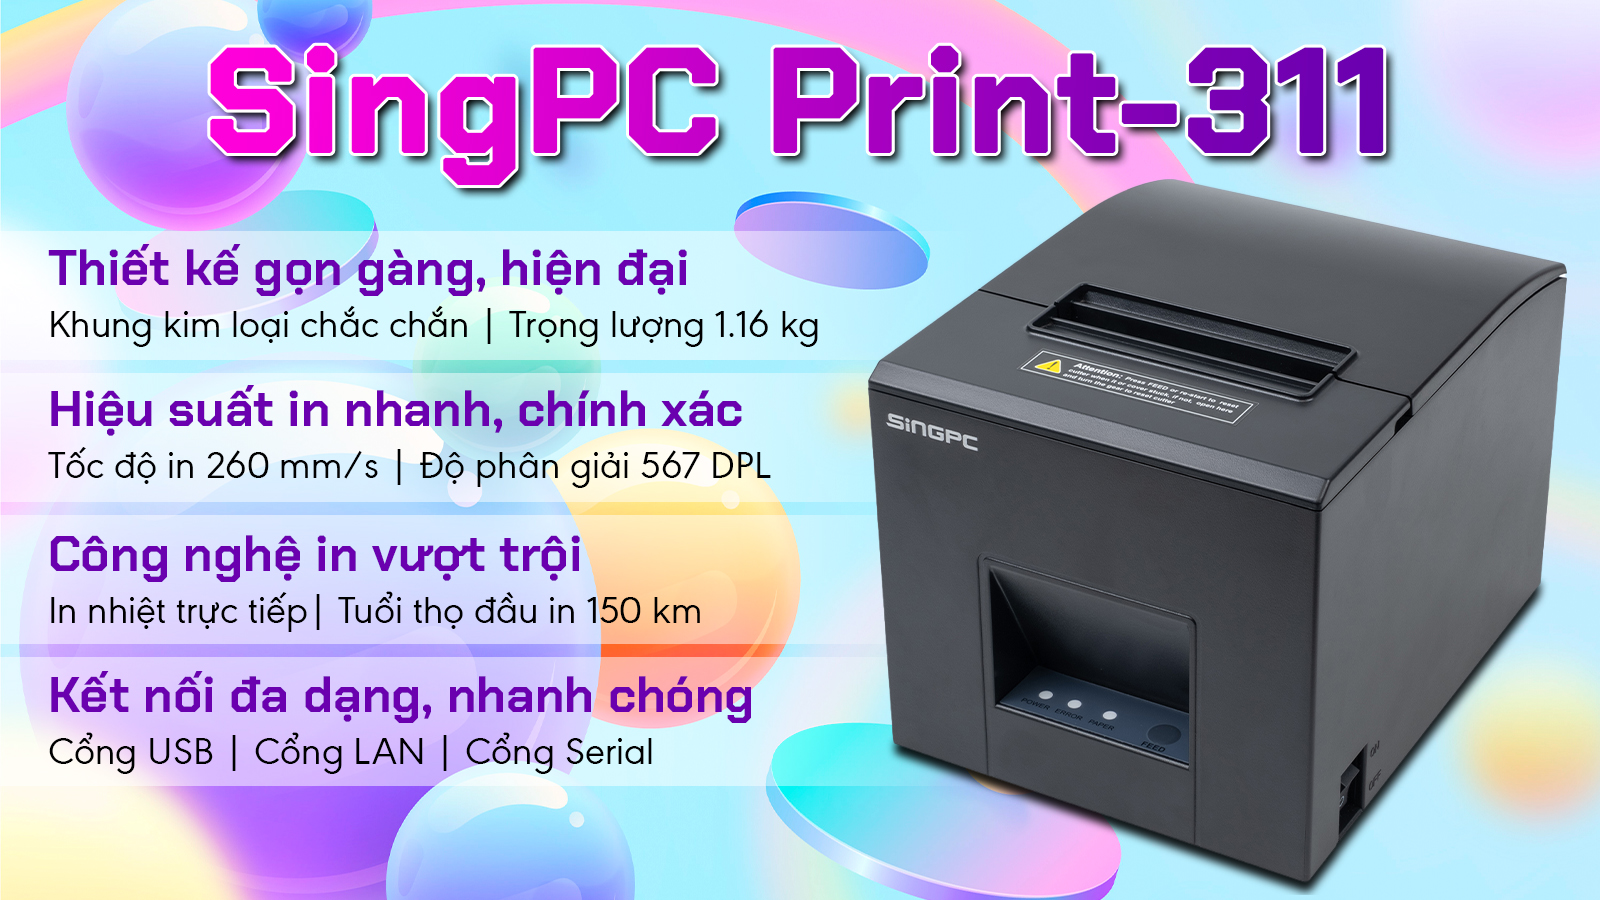 Máy in hóa đơn SingPC Print - 311 - Hàng chính hãng